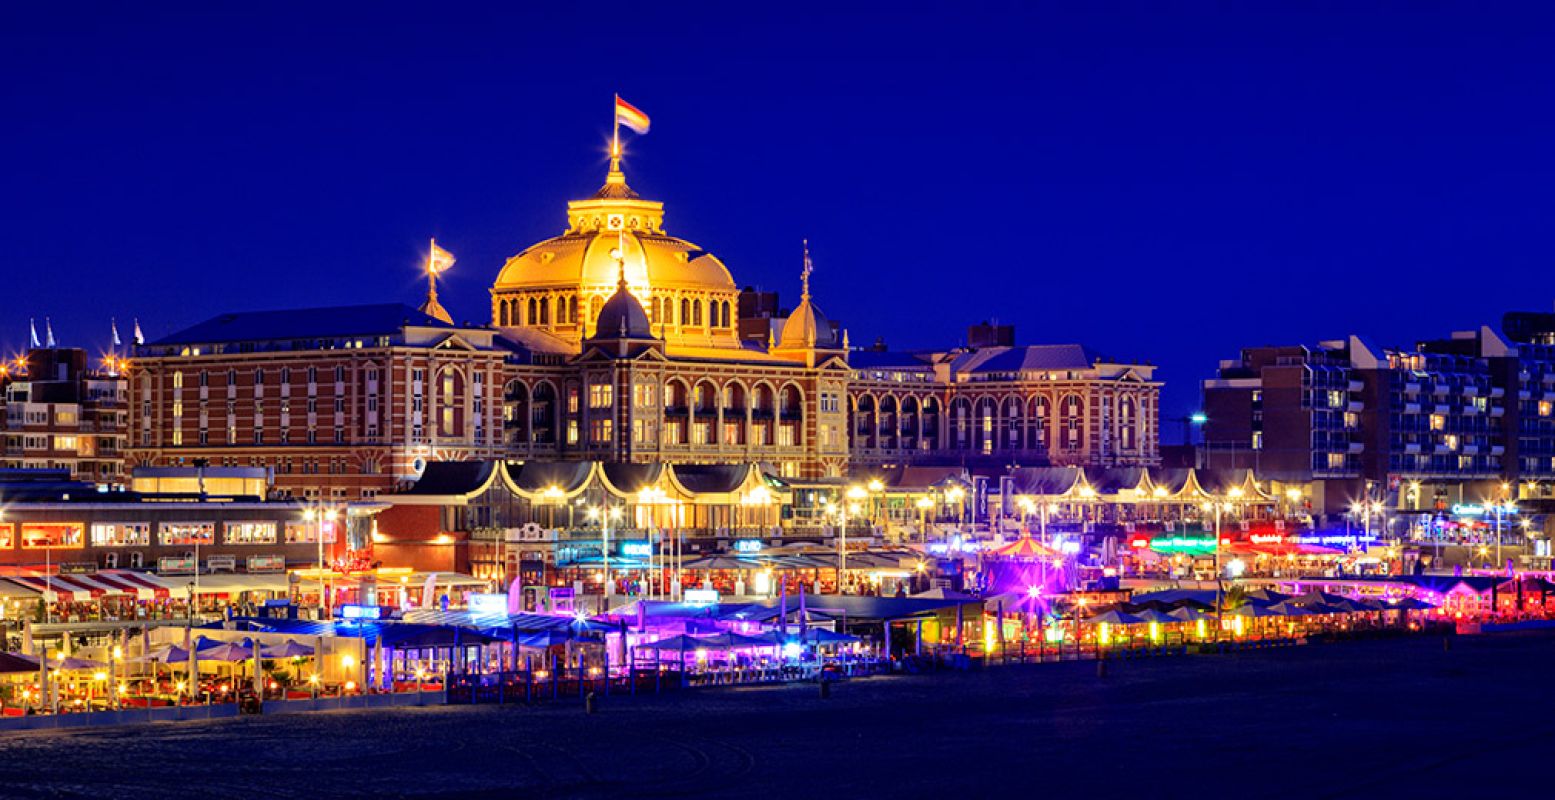 De meest iconische gebouwen van Den Haag staan letterlijk in de spotlights. Foto: Arjan de Jager.